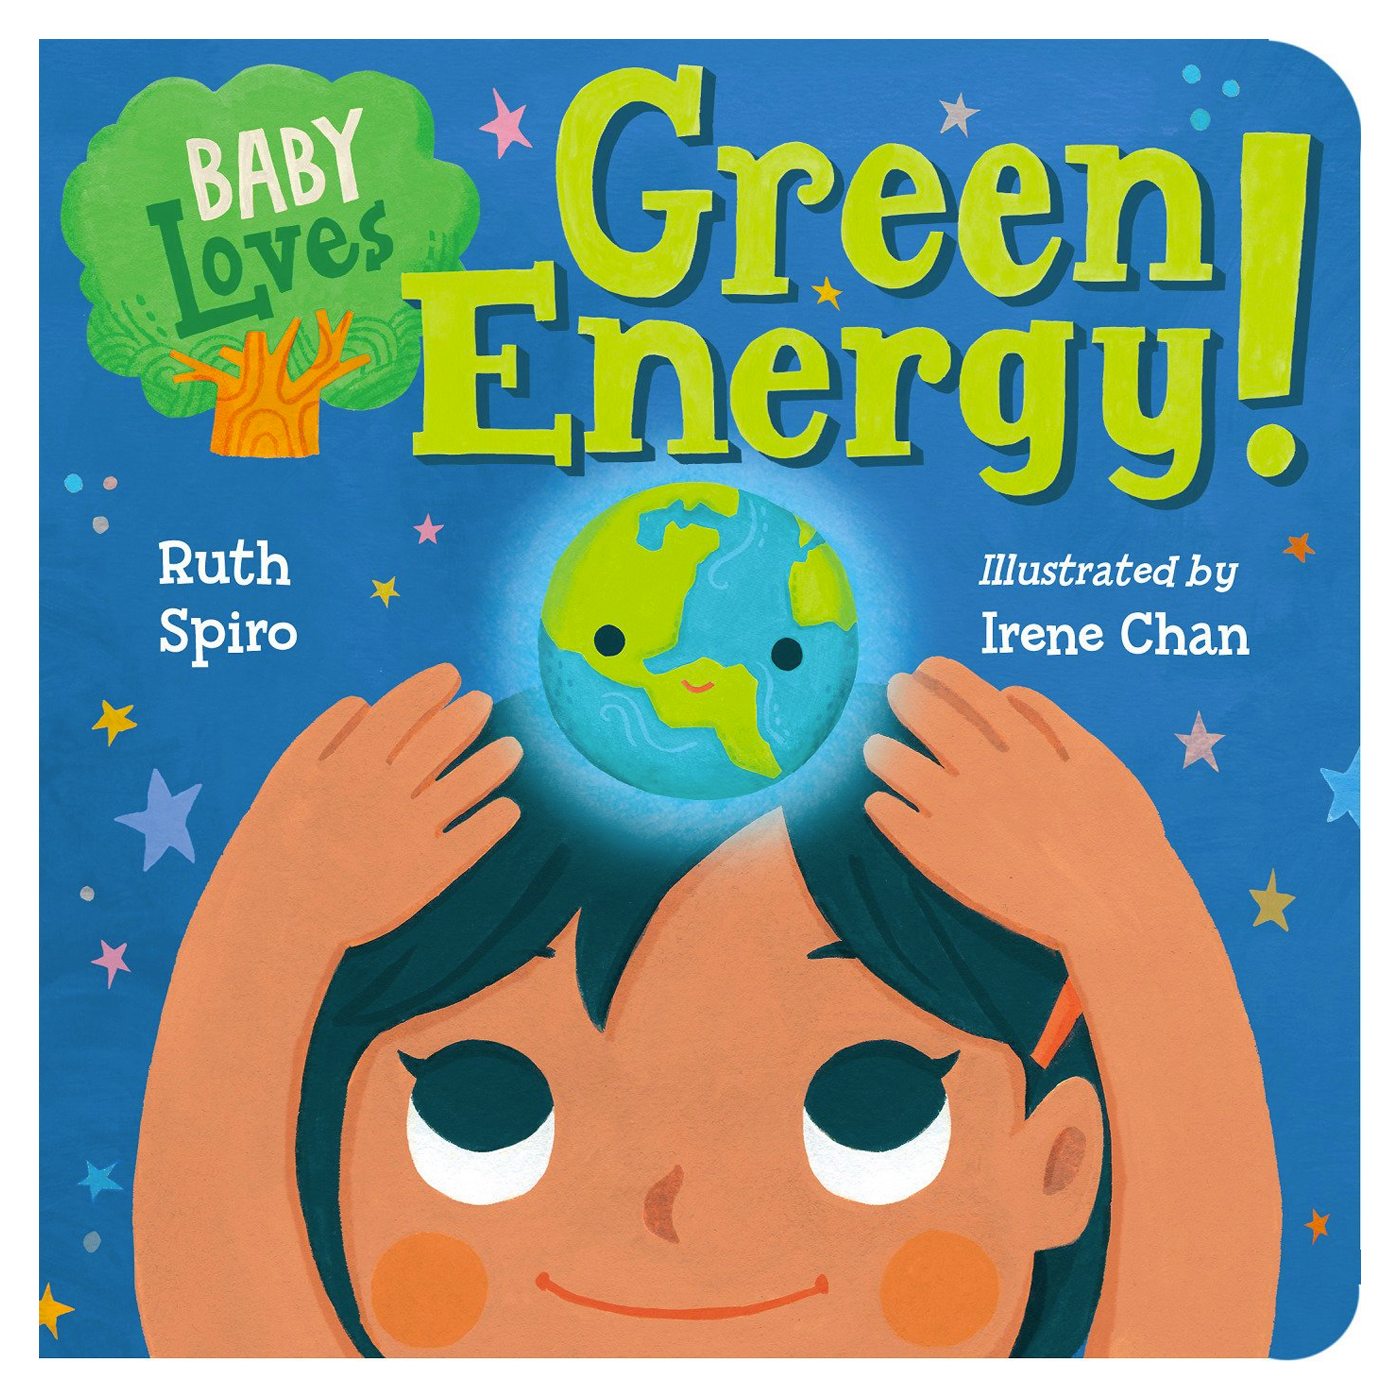  Baby Loves Green Energy